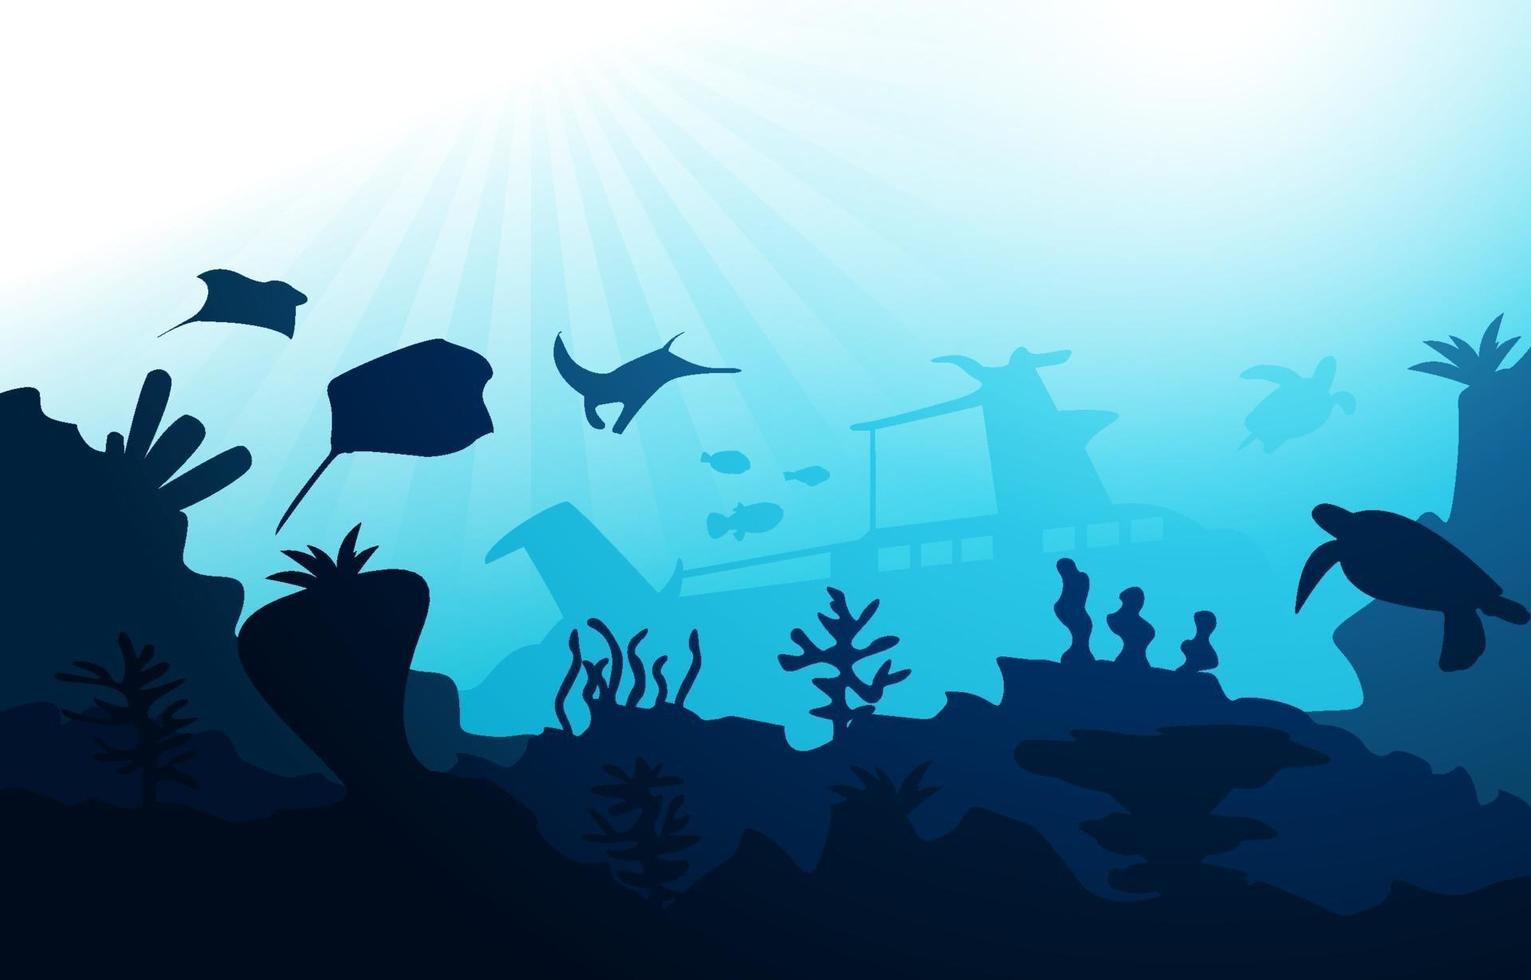 gezonken schip dieren in het wild zeedieren oceaan onderwater aquatische illustratie vector